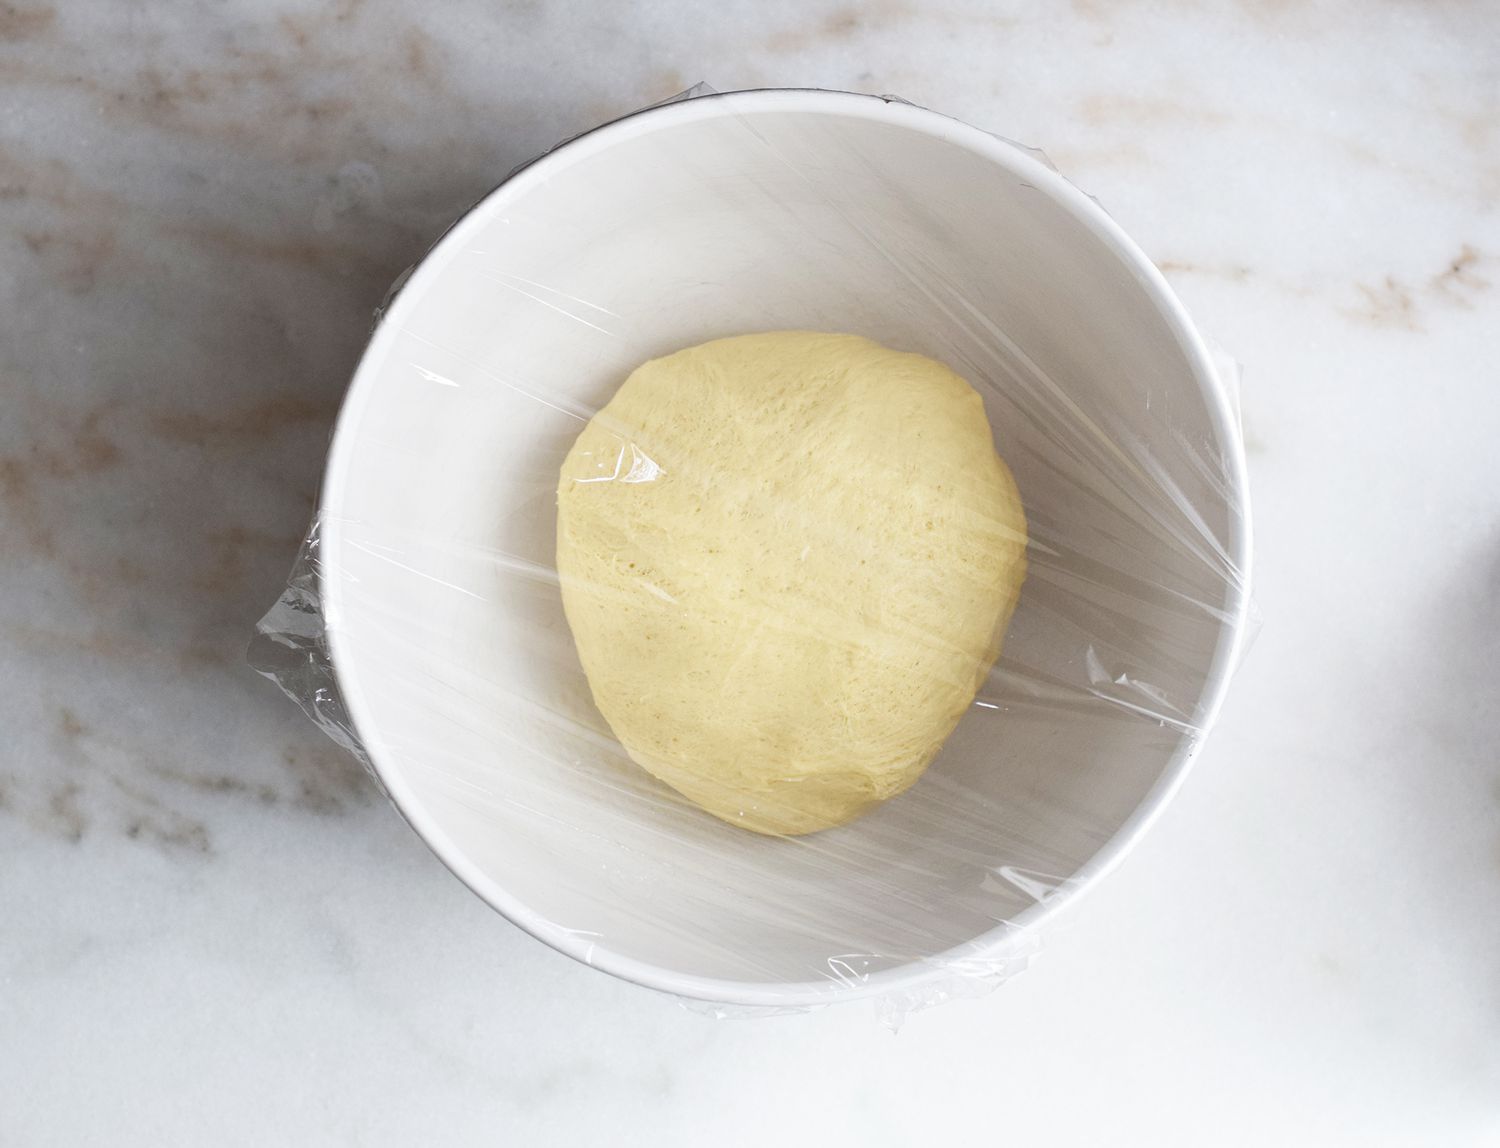 bierock dough rising in a bowl